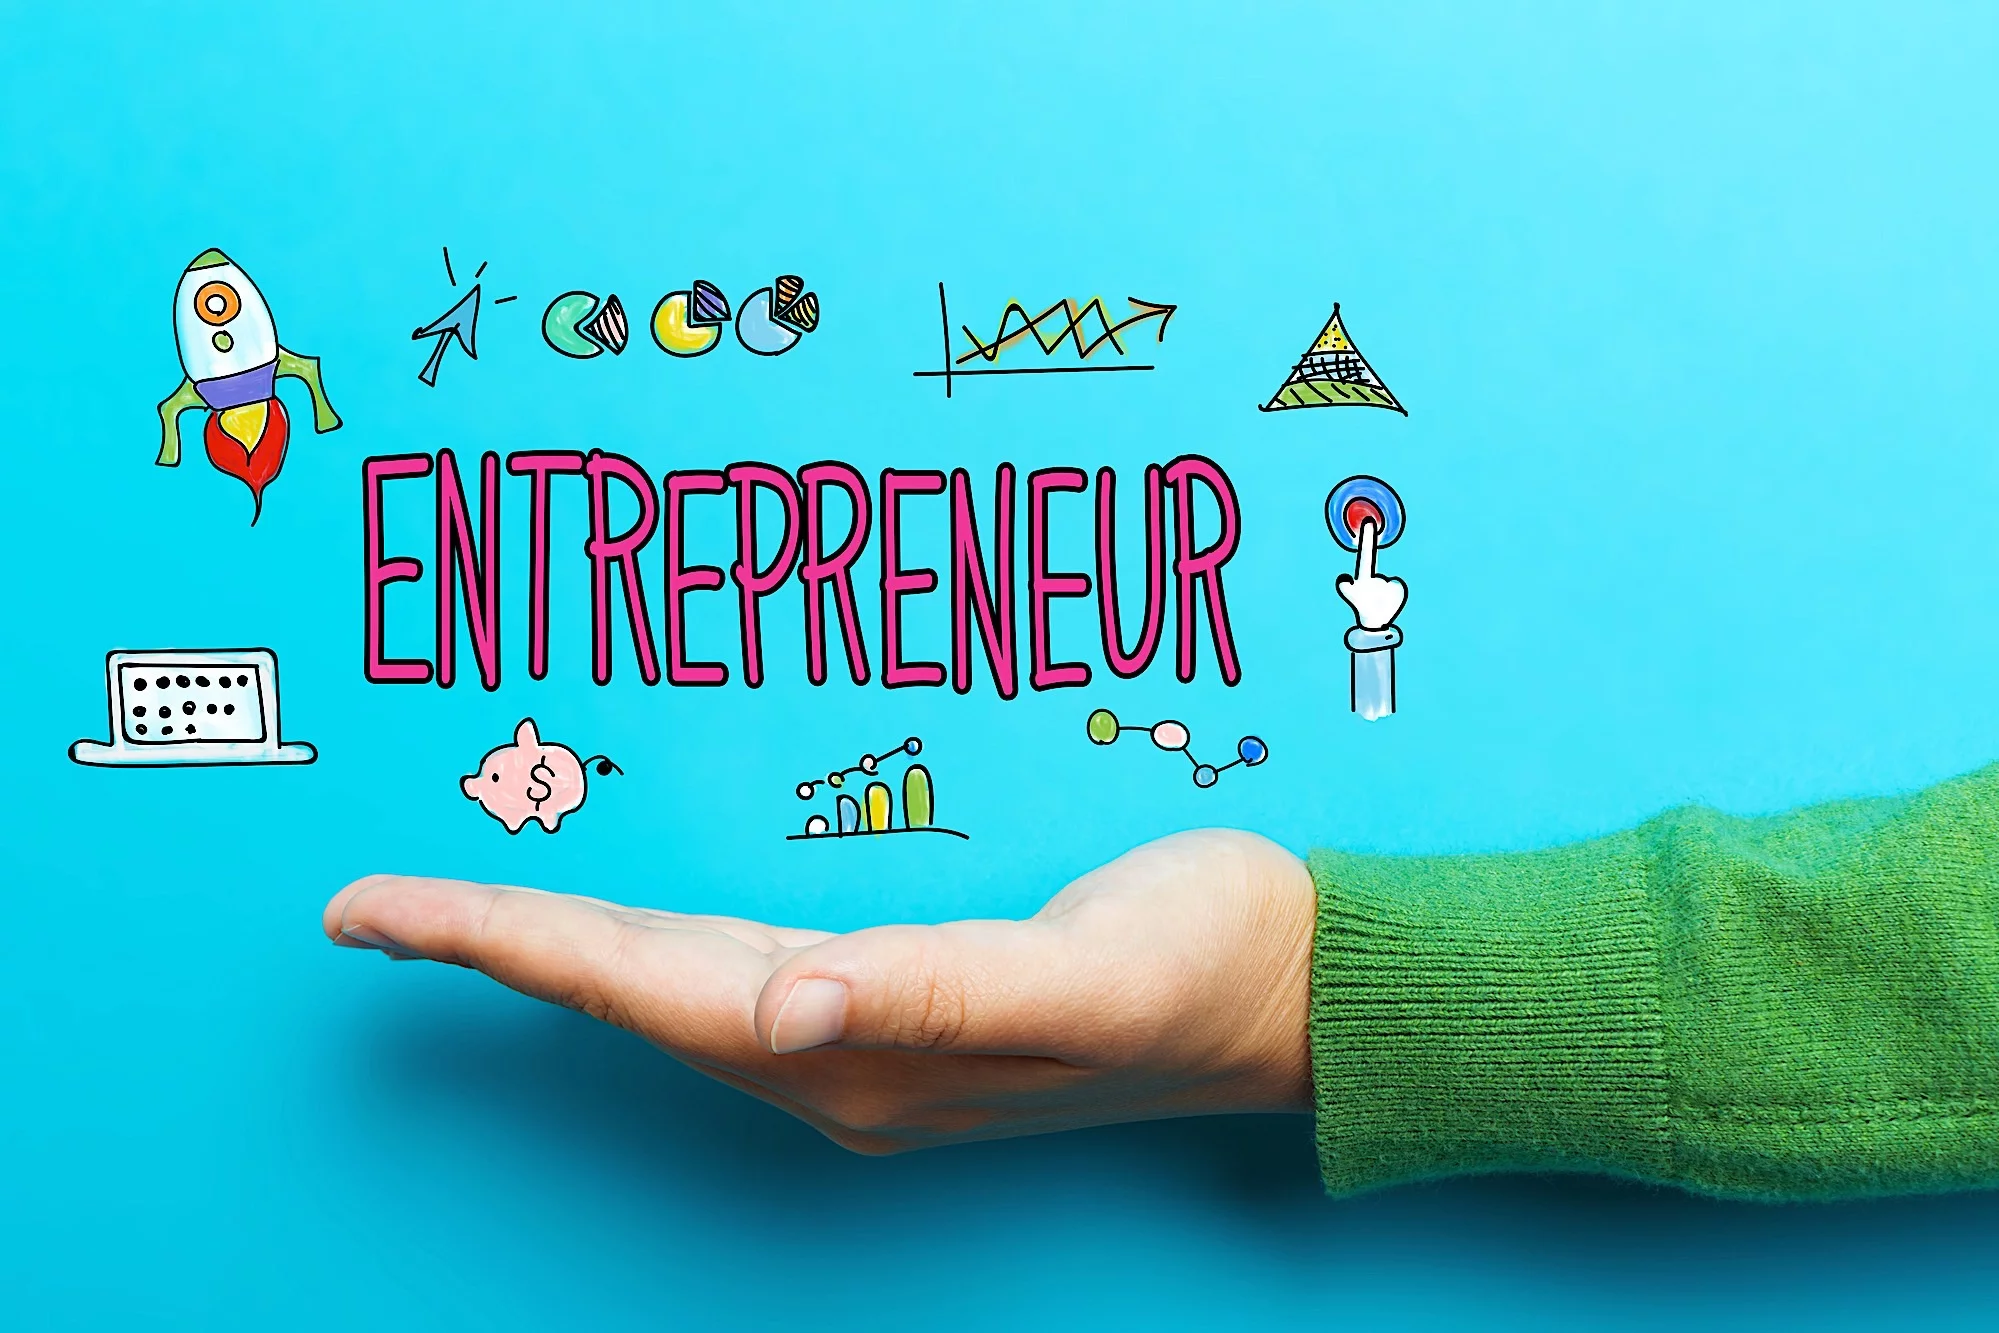 Entrepreneur vs investor